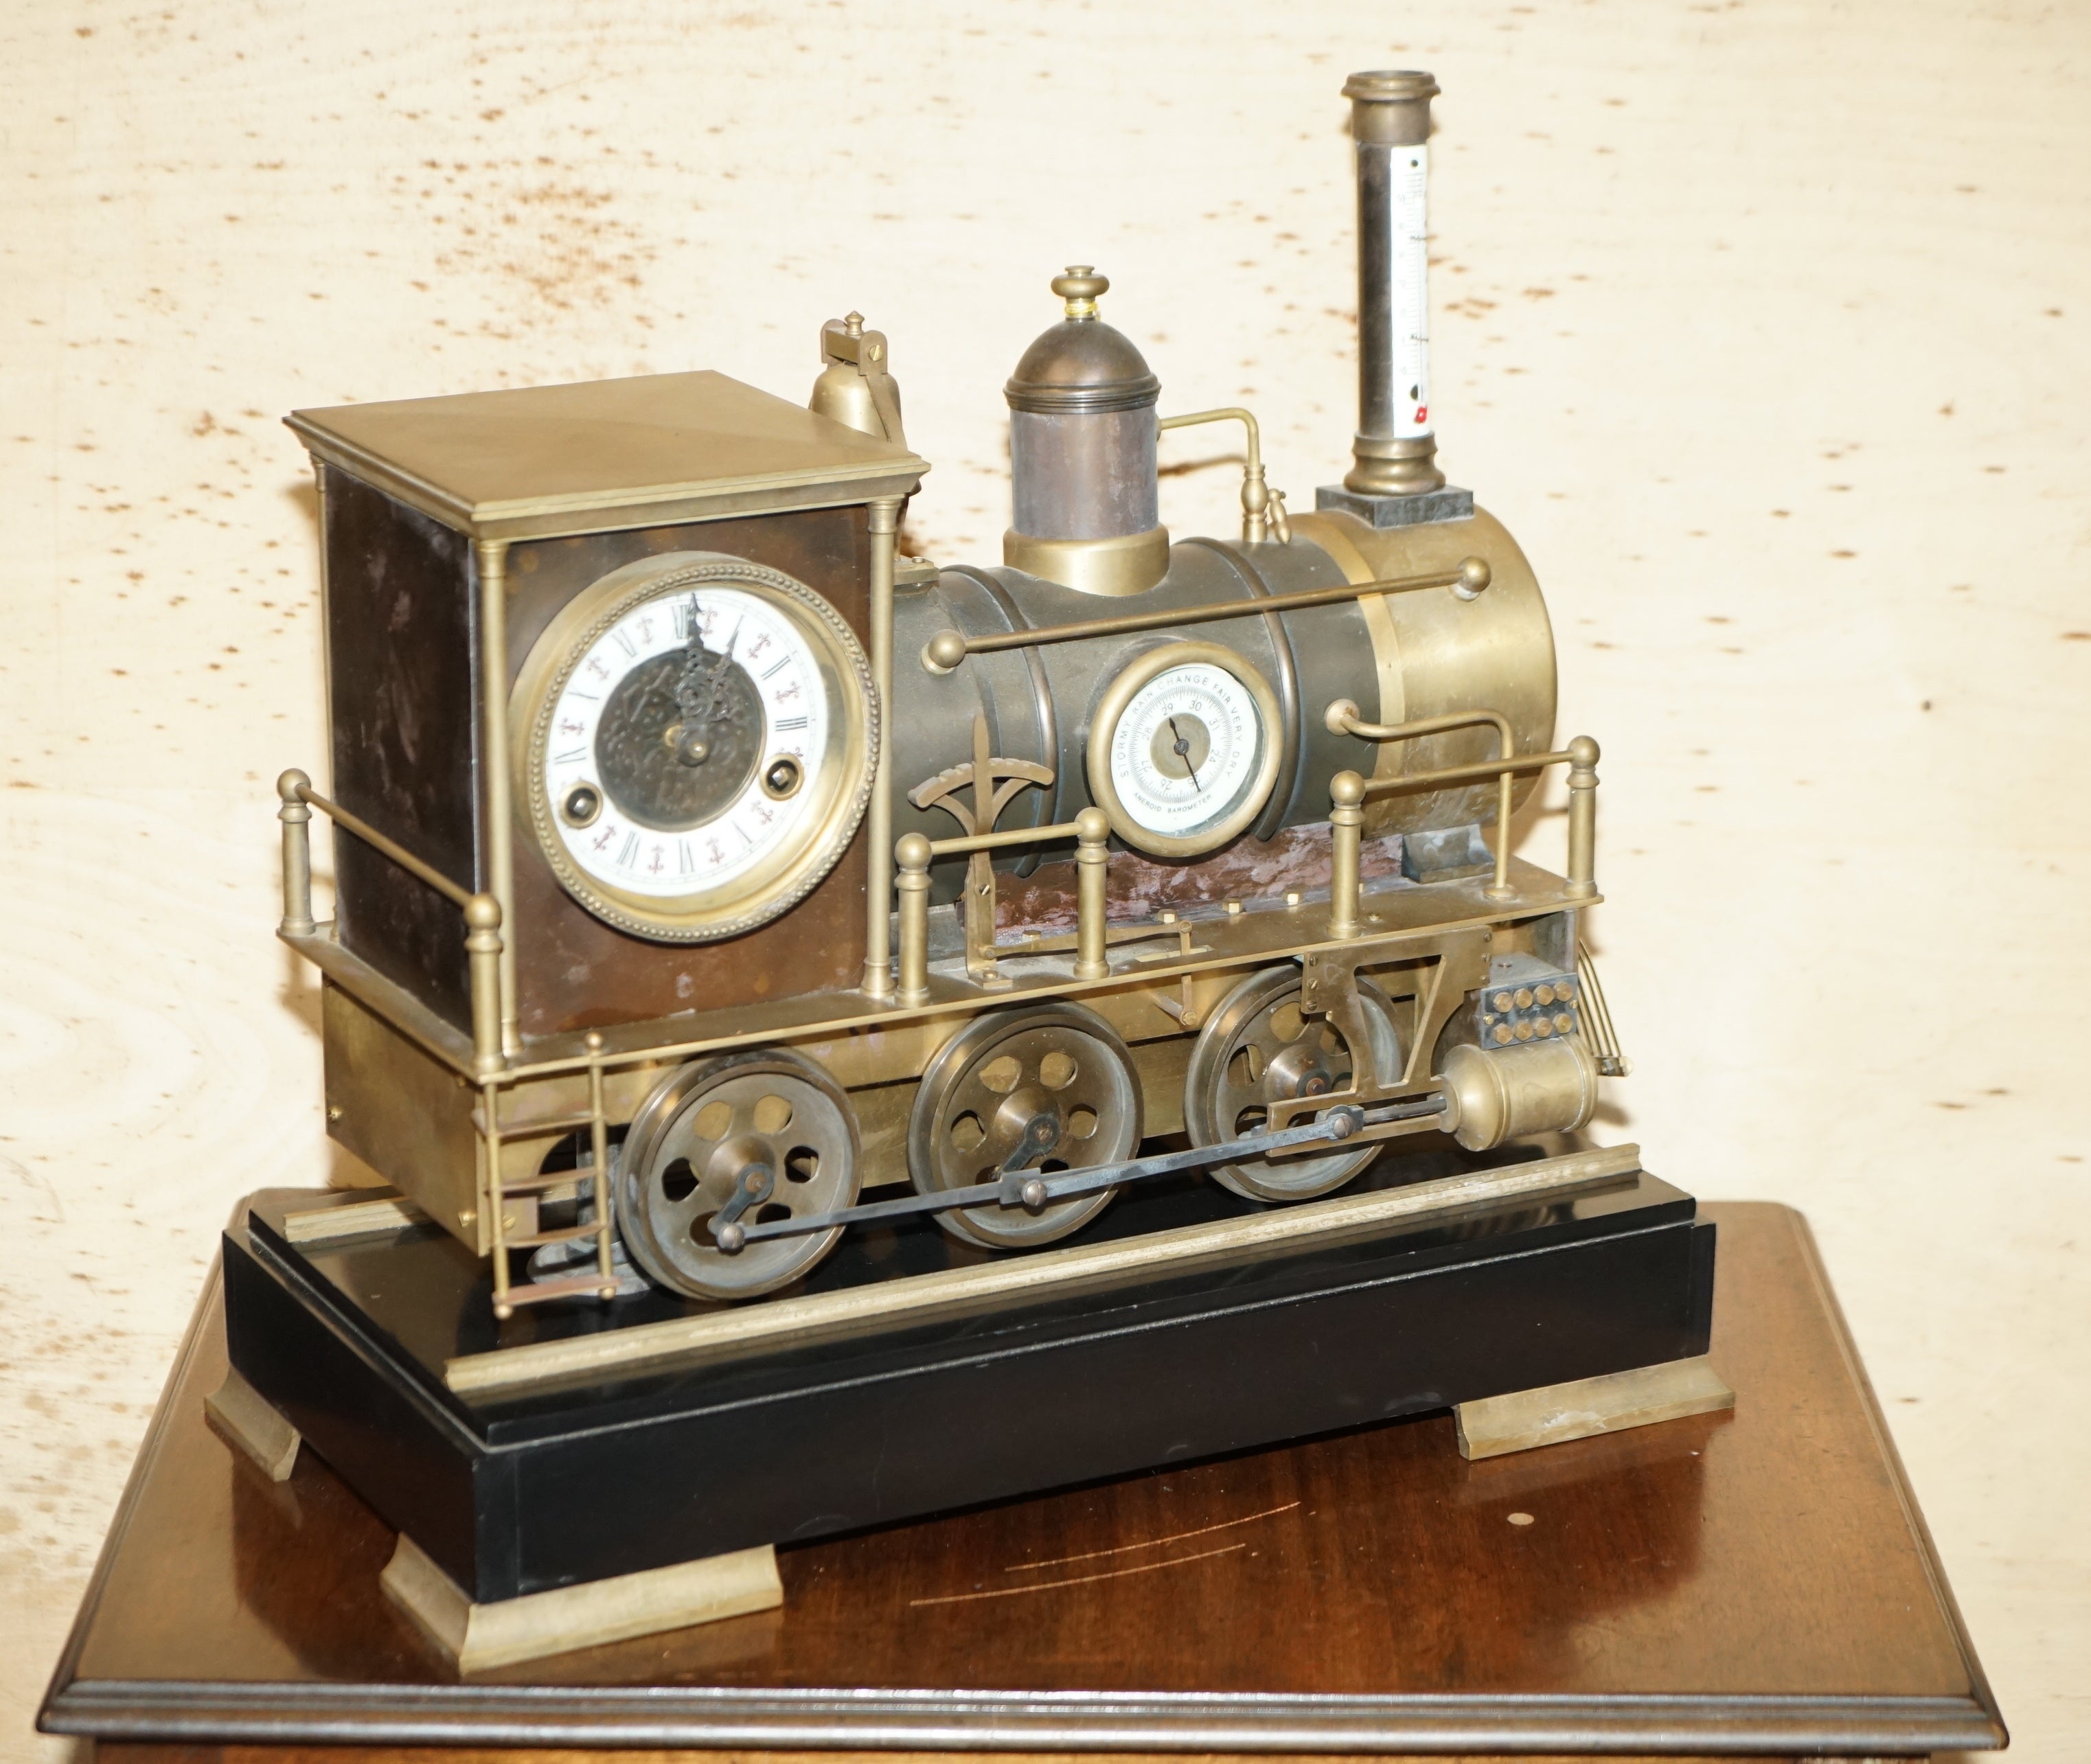 Royal House Antiques

Royal House Antiques freut sich, diese sehr schöne und sehr sammelwürdige antike französische Automaton-Industrielokomotive von ca. 1895 zum Verkauf anzubieten, die auf einem massiven Marmorsockel mit Bronzefüßen steht.

Diese